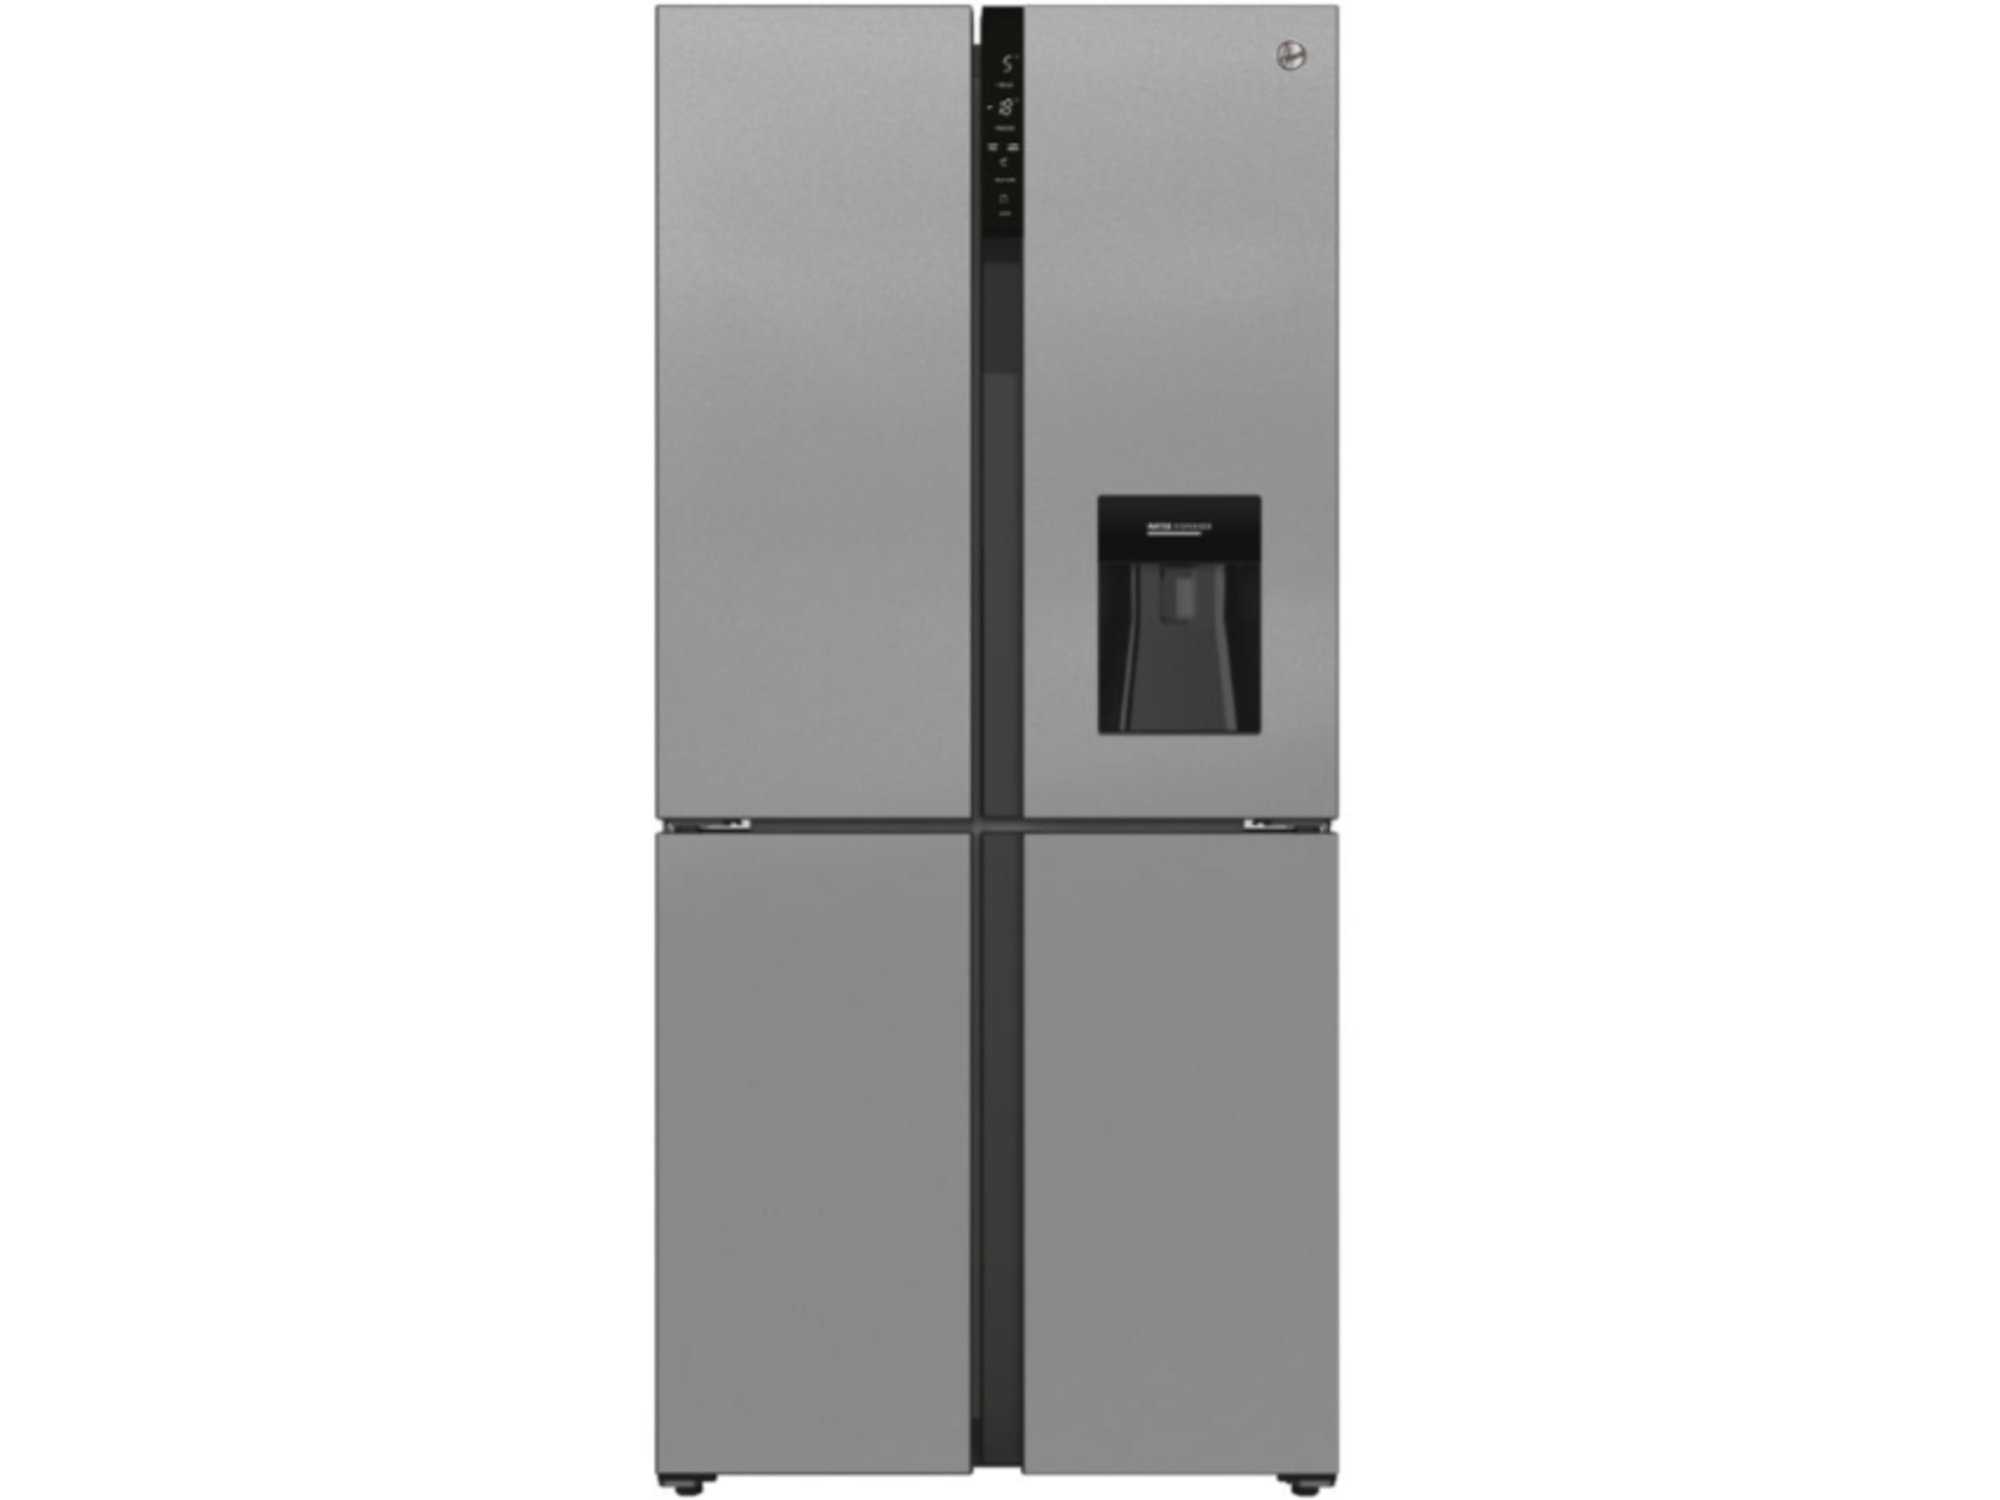 HOOVER Ameriški hladilnik HSC818EXWD, 183cm, E 